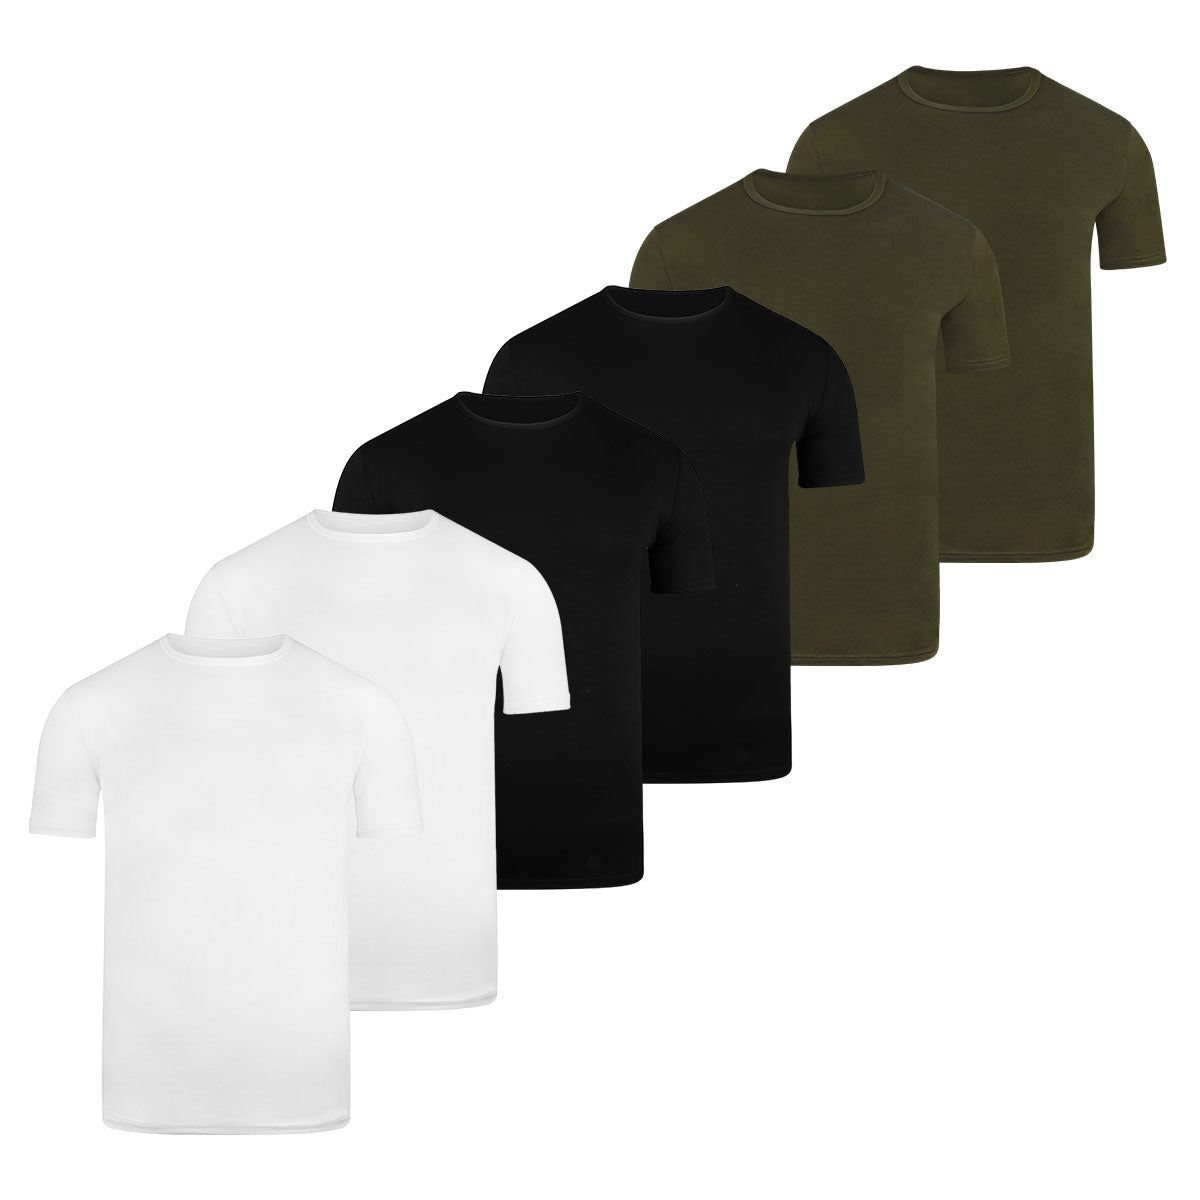 BOXR | T-shirt en bambou - Lot de 6 - Multicolore